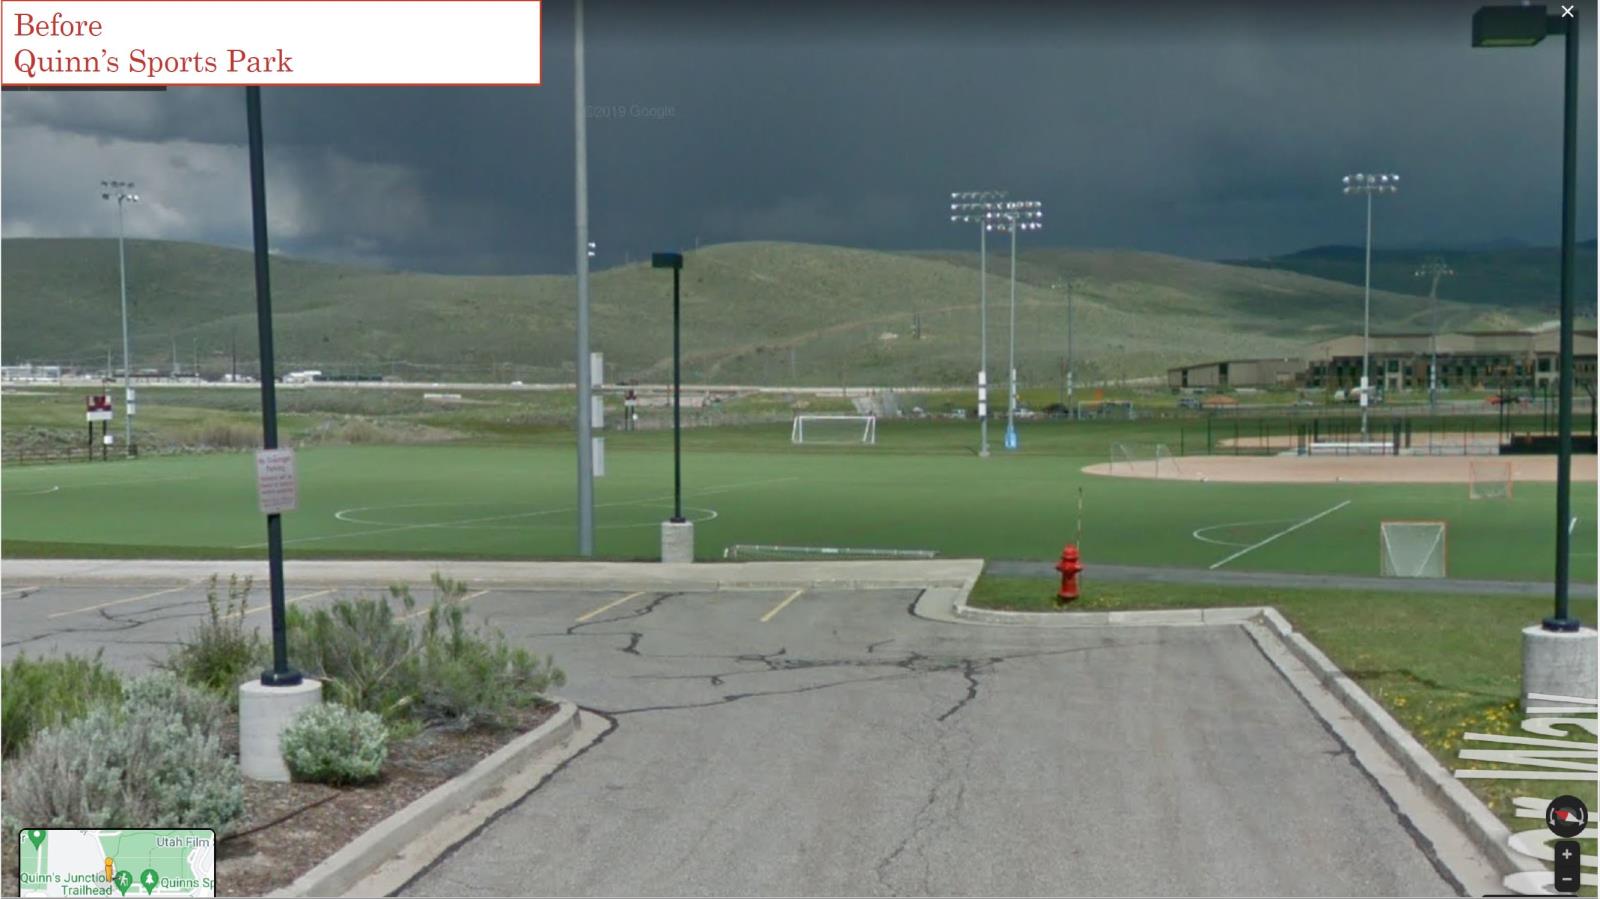 Quinn's Sports Park Before